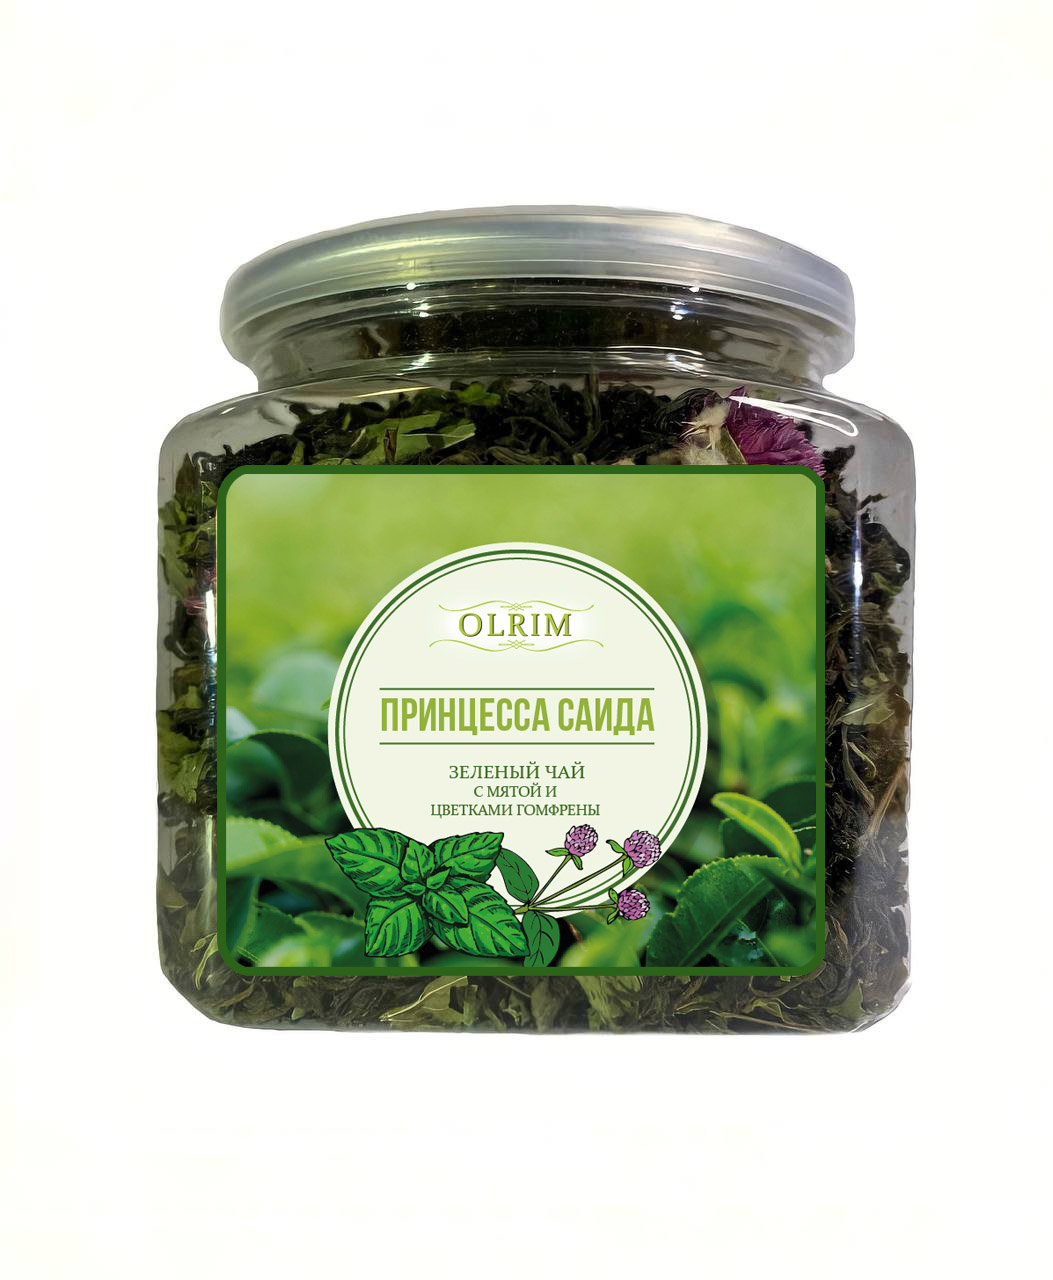 Чай зелёный Olrim Принцесса Саида с мятой и цветками гомфрены, 120 г